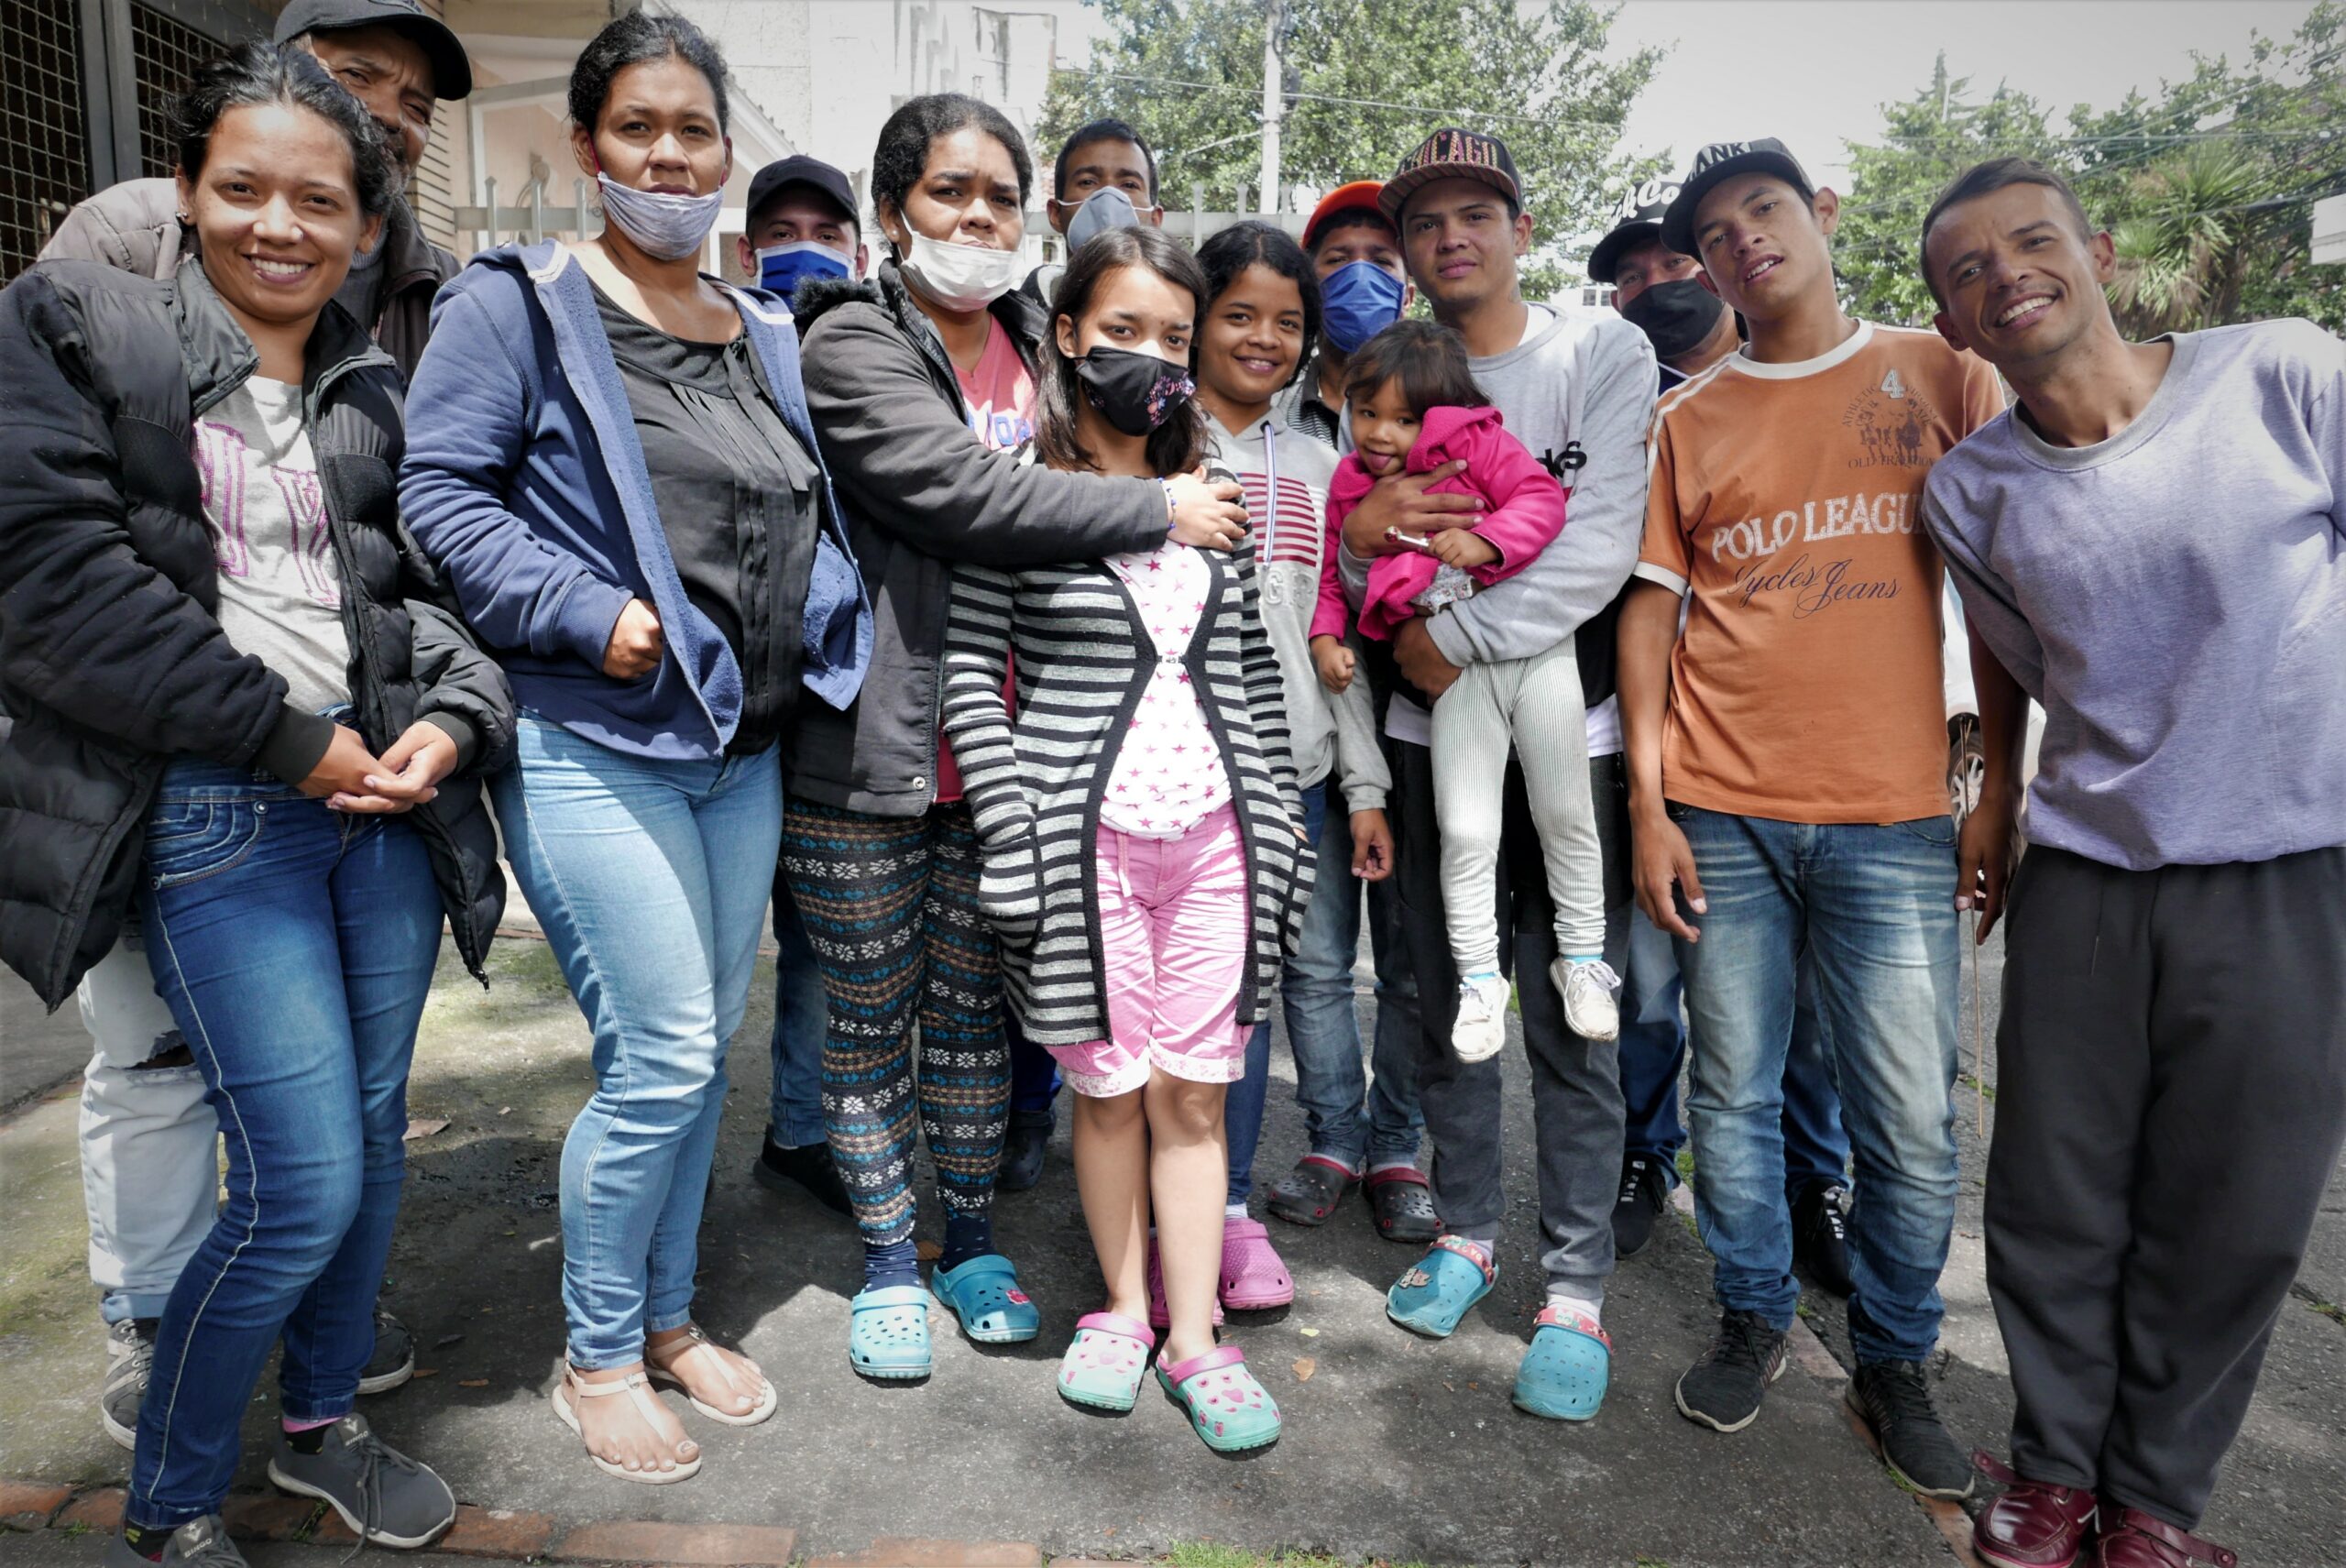 Coronavirus: Bogotá’s Venezuelan migrants face tough choices